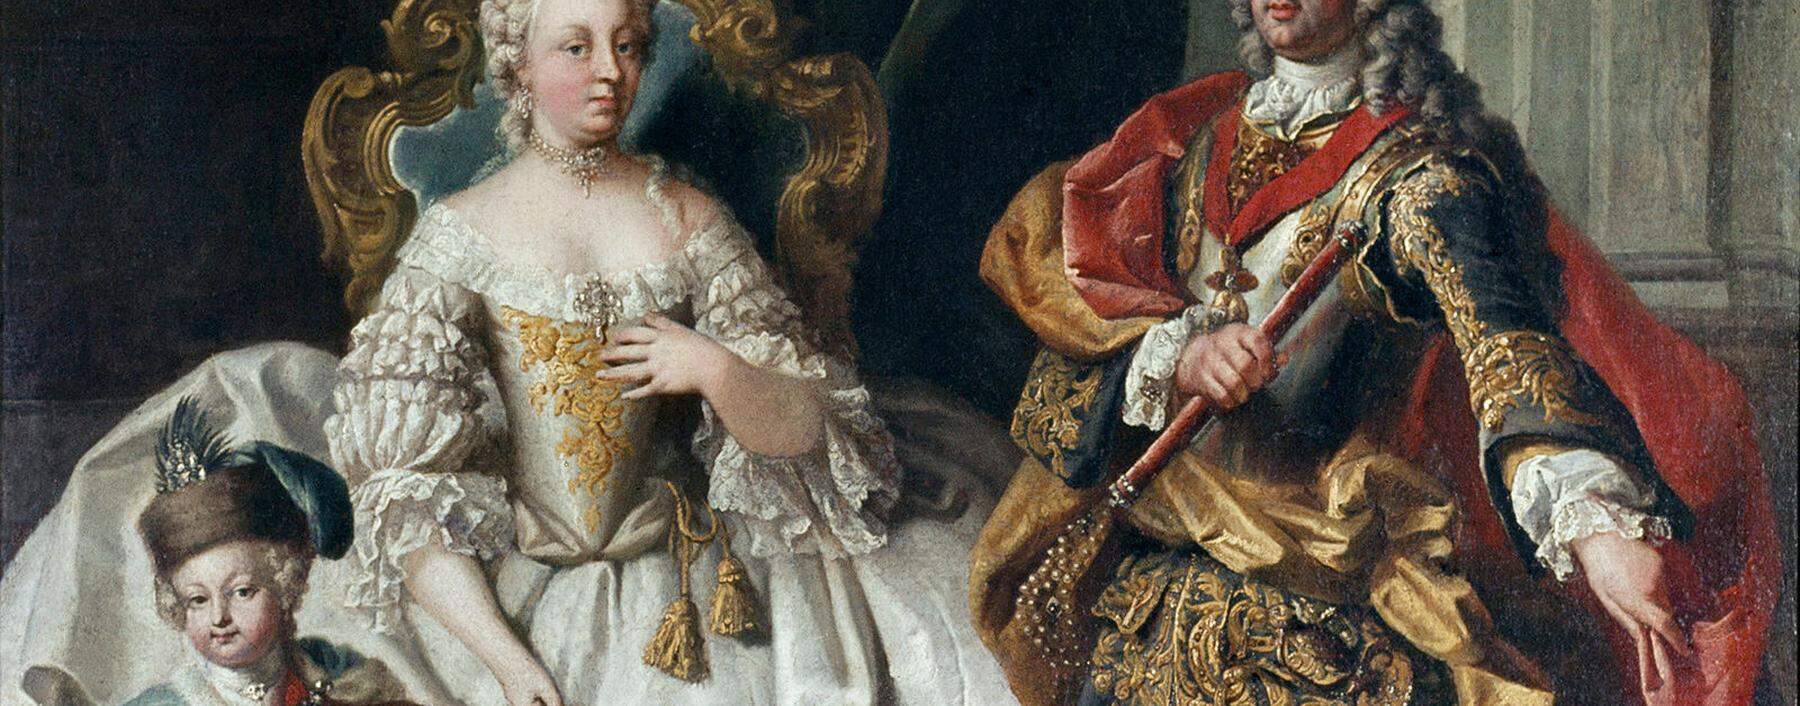 Der Nachwuchs war bei vielen repräsentativen Gemälden mit dabei. Hier das kaiserliche Paar Maria Theresia und Ehemann Franz Stephan mit Thronfolger Joseph. Die Bildaussage: Die Dynastie wird weiterleben.